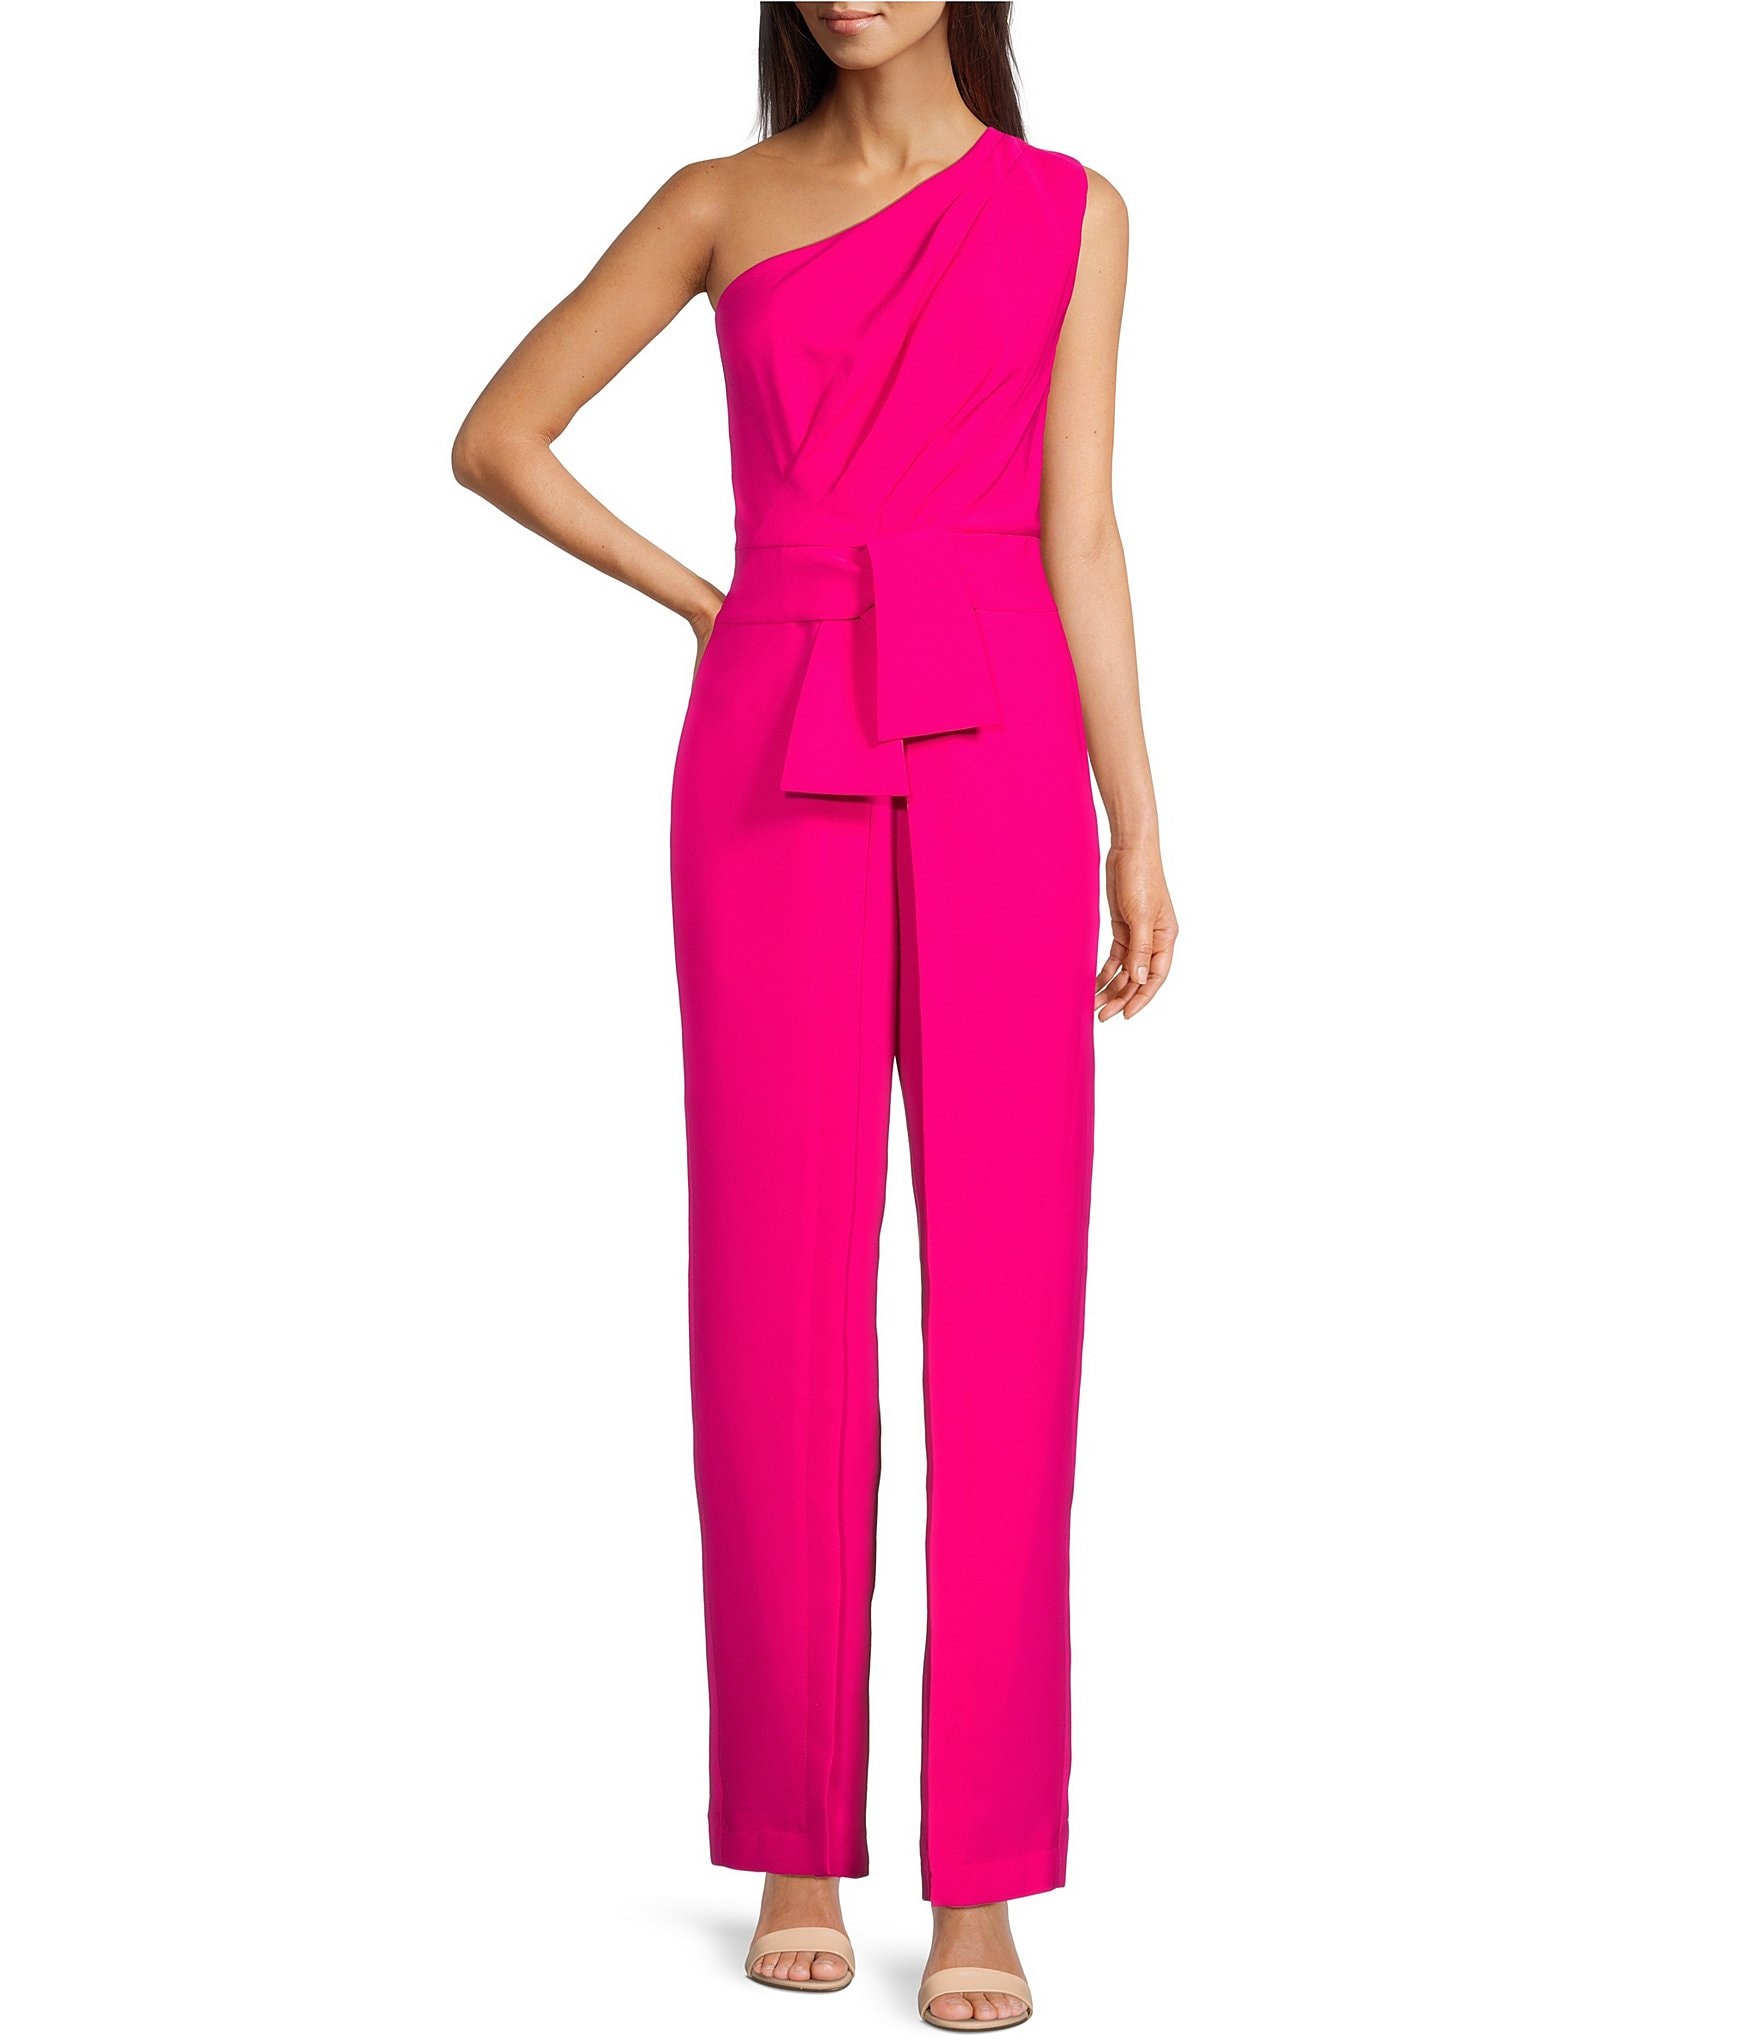 Hot Pink 2-Piece Jumpsuit - Square Neck Jumpsuit - Co-Ord Set - Lulus